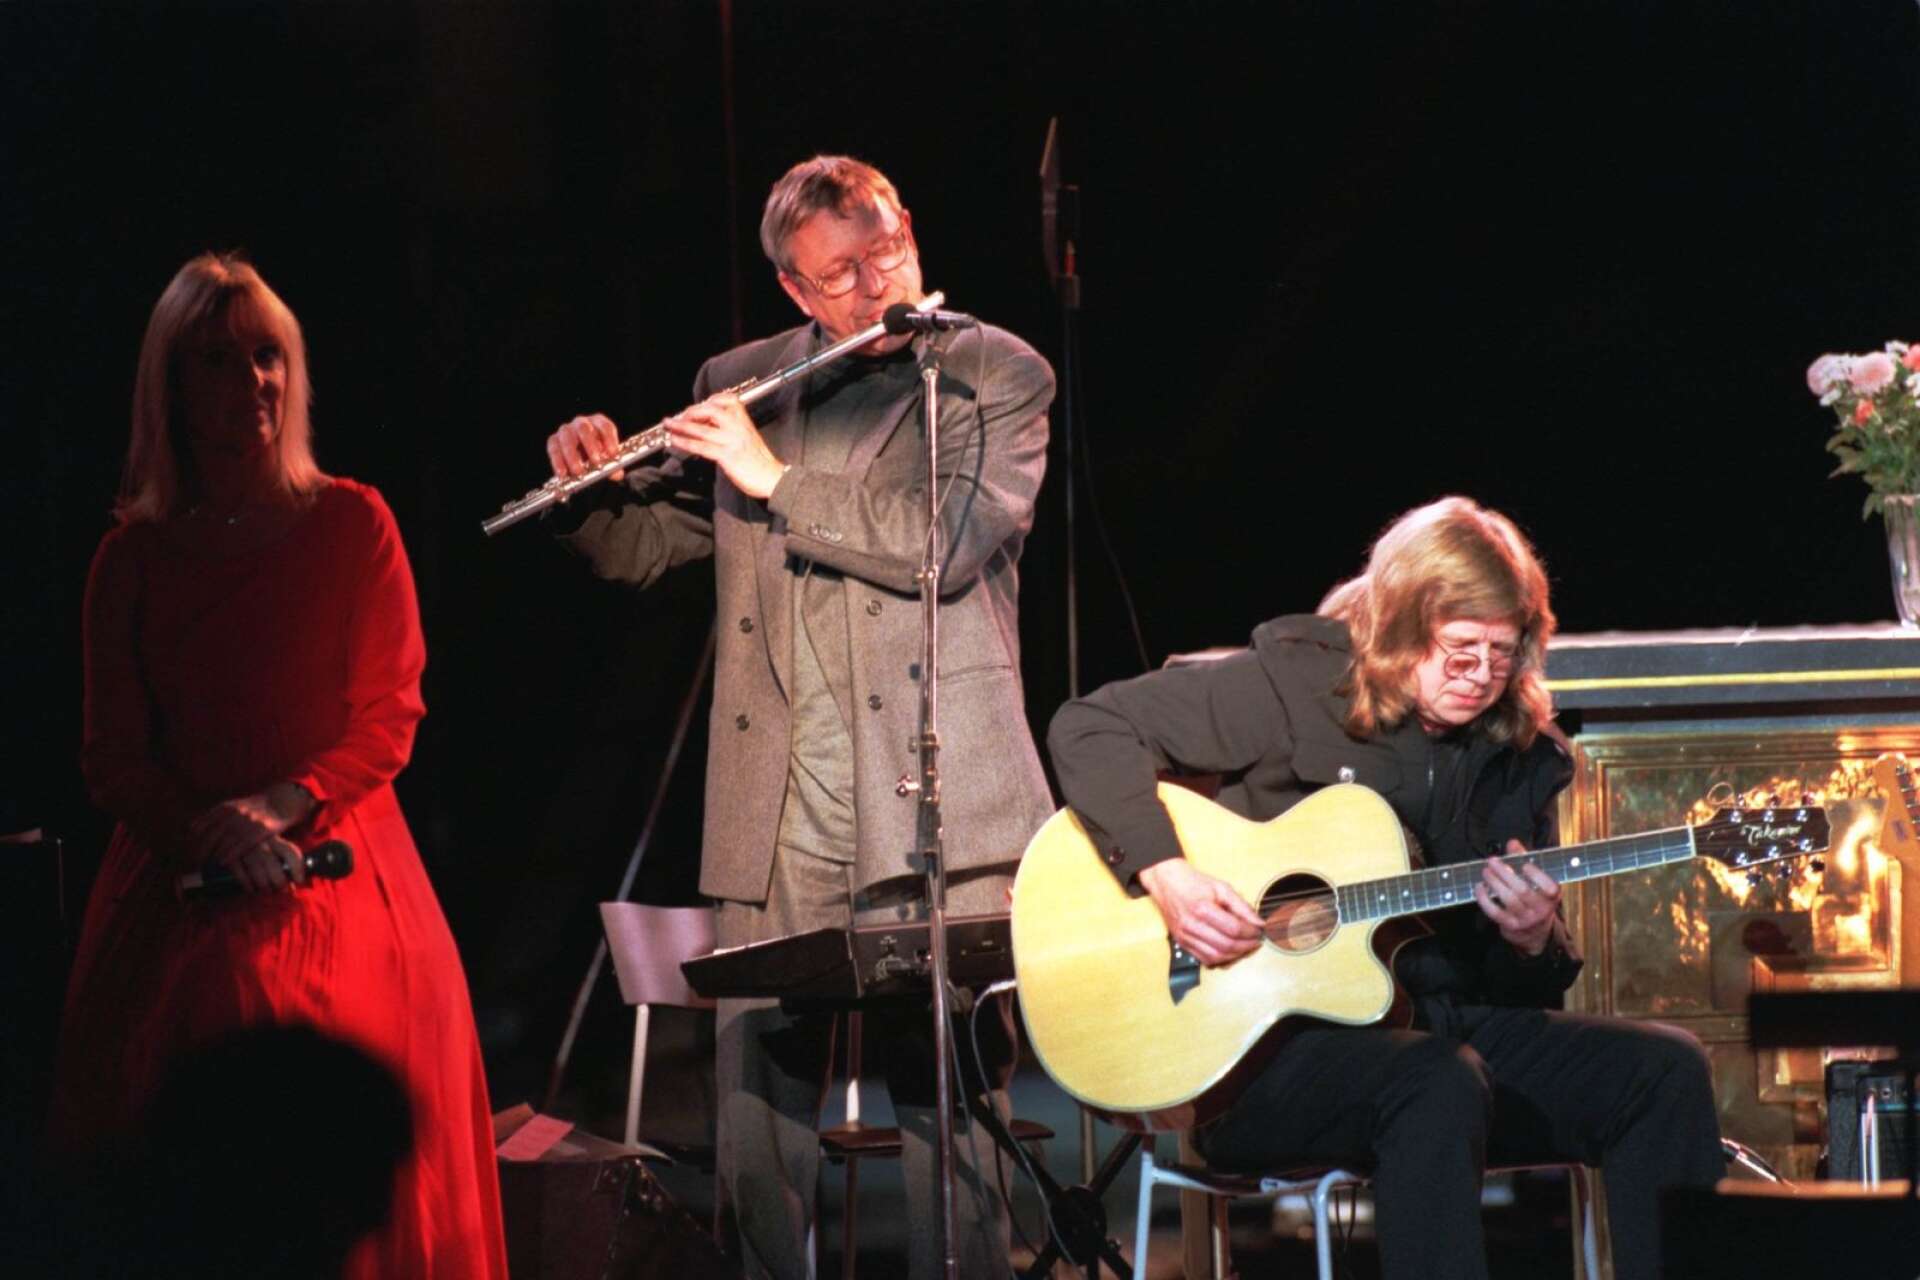 Janne Schaffer och Björn J:son Lindh har haft mångåriga musikaliska samarbeten. På bilden syns Anita Strandell till vänster, Björn J:son Lindh i mitten, och Janne Schaffer till höger när de spela under en minneskonsert för Cornelis Vreeswijk. Bilden är en arkivbild.